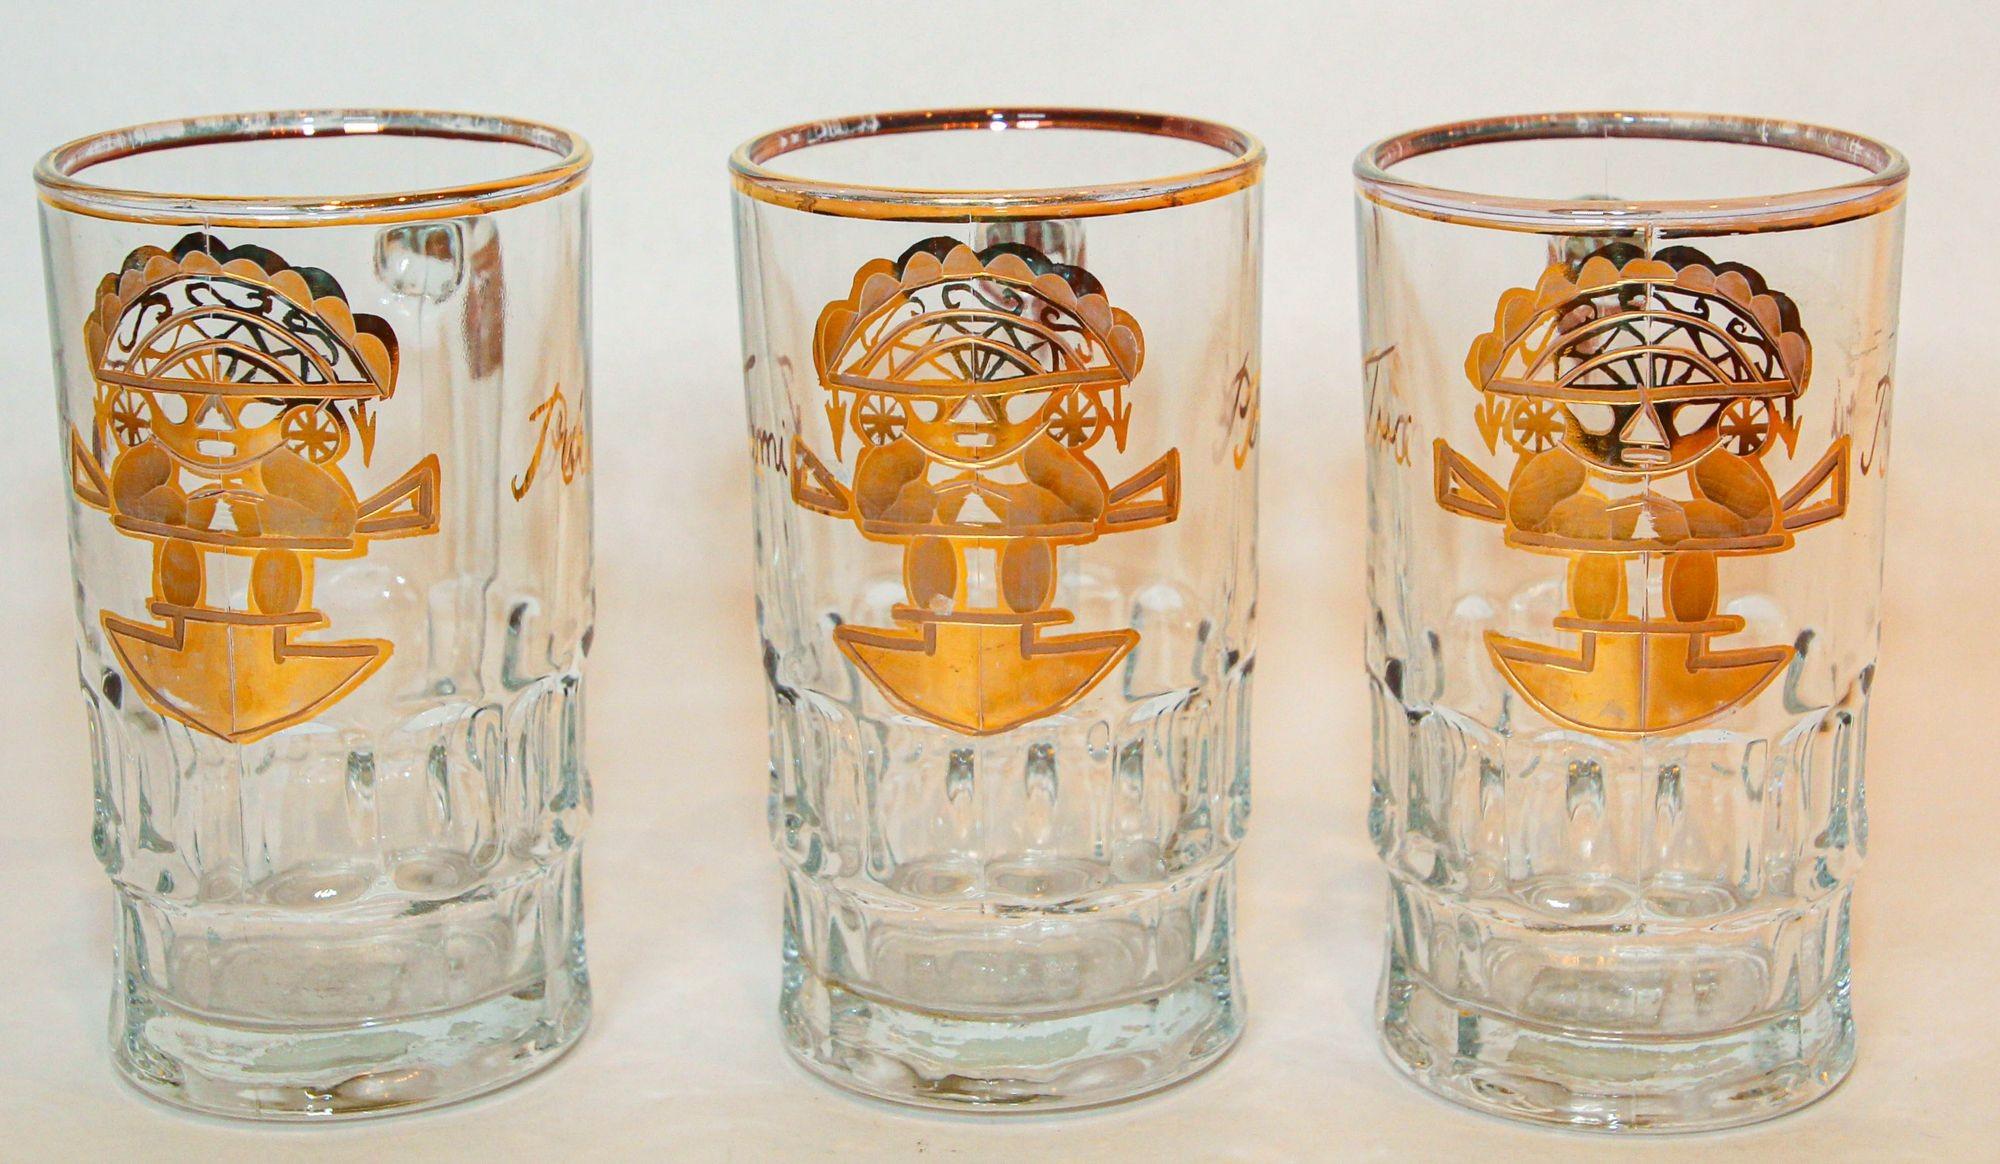 Vintage Artesania Tabuisa Tumi Peruvian God Gold Glass Mugs Set of 3.
Installez le Tiki Bar et servez votre boisson ou votre bière préférée, avec un Tumi aztèque.
Le graphisme est très frappant et très moderniste.
Chaque verre est orné d'une figure